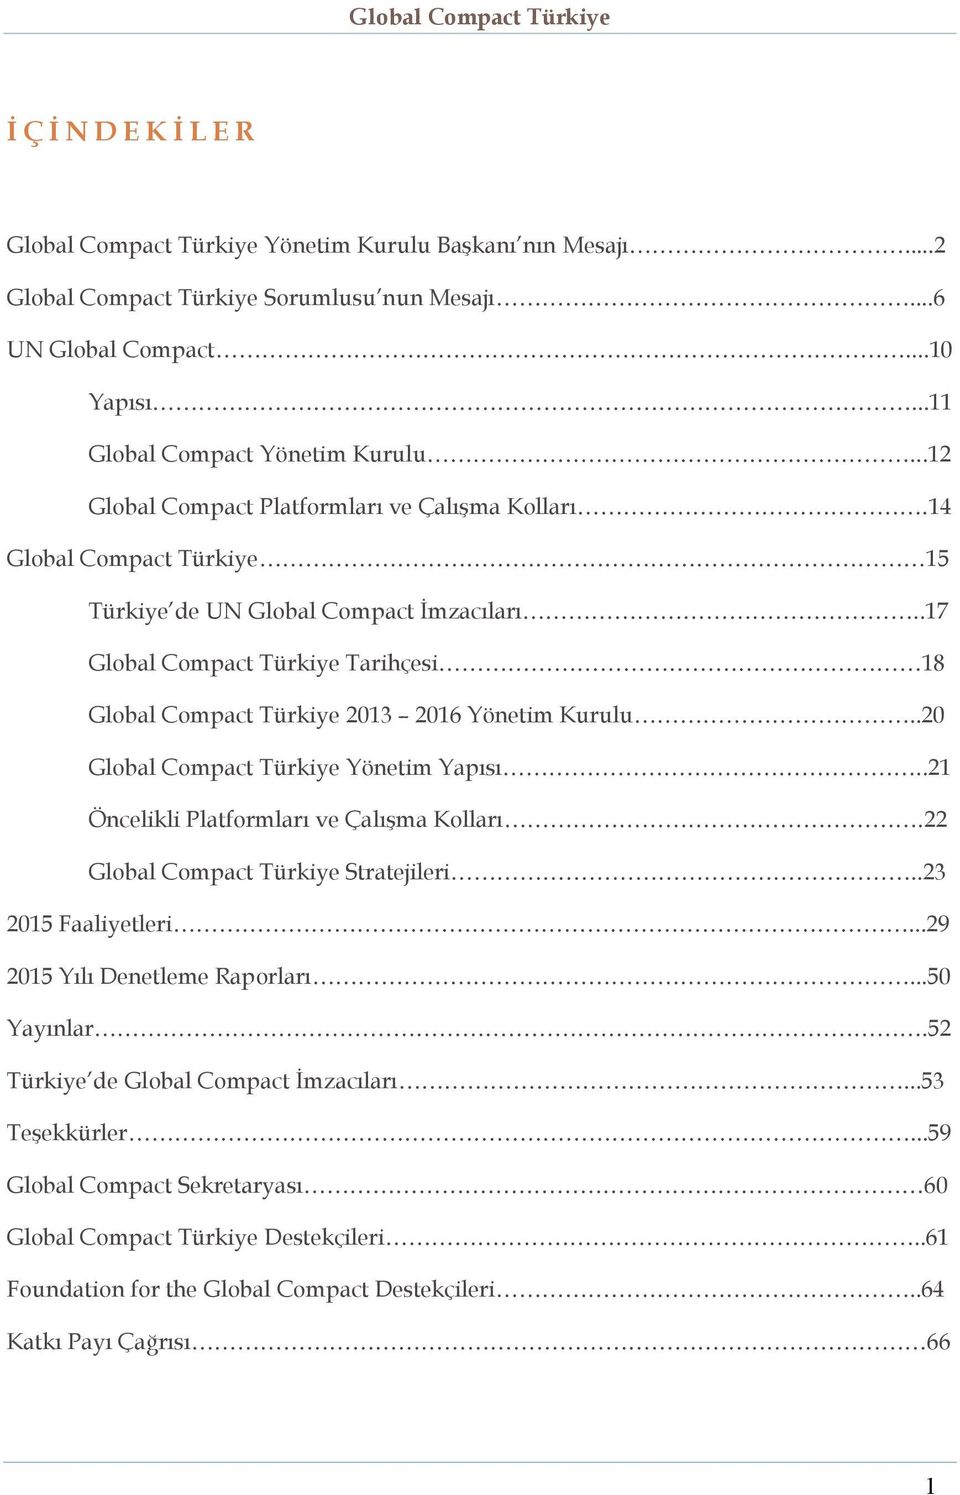 .17 Global Compact Türkiye Tarihçesi 18 Global Compact Türkiye 2013 2016 Yönetim Kurulu..20 Global Compact Türkiye Yönetim Yapısı..21 Öncelikli Platformları ve Çalışma Kolları.